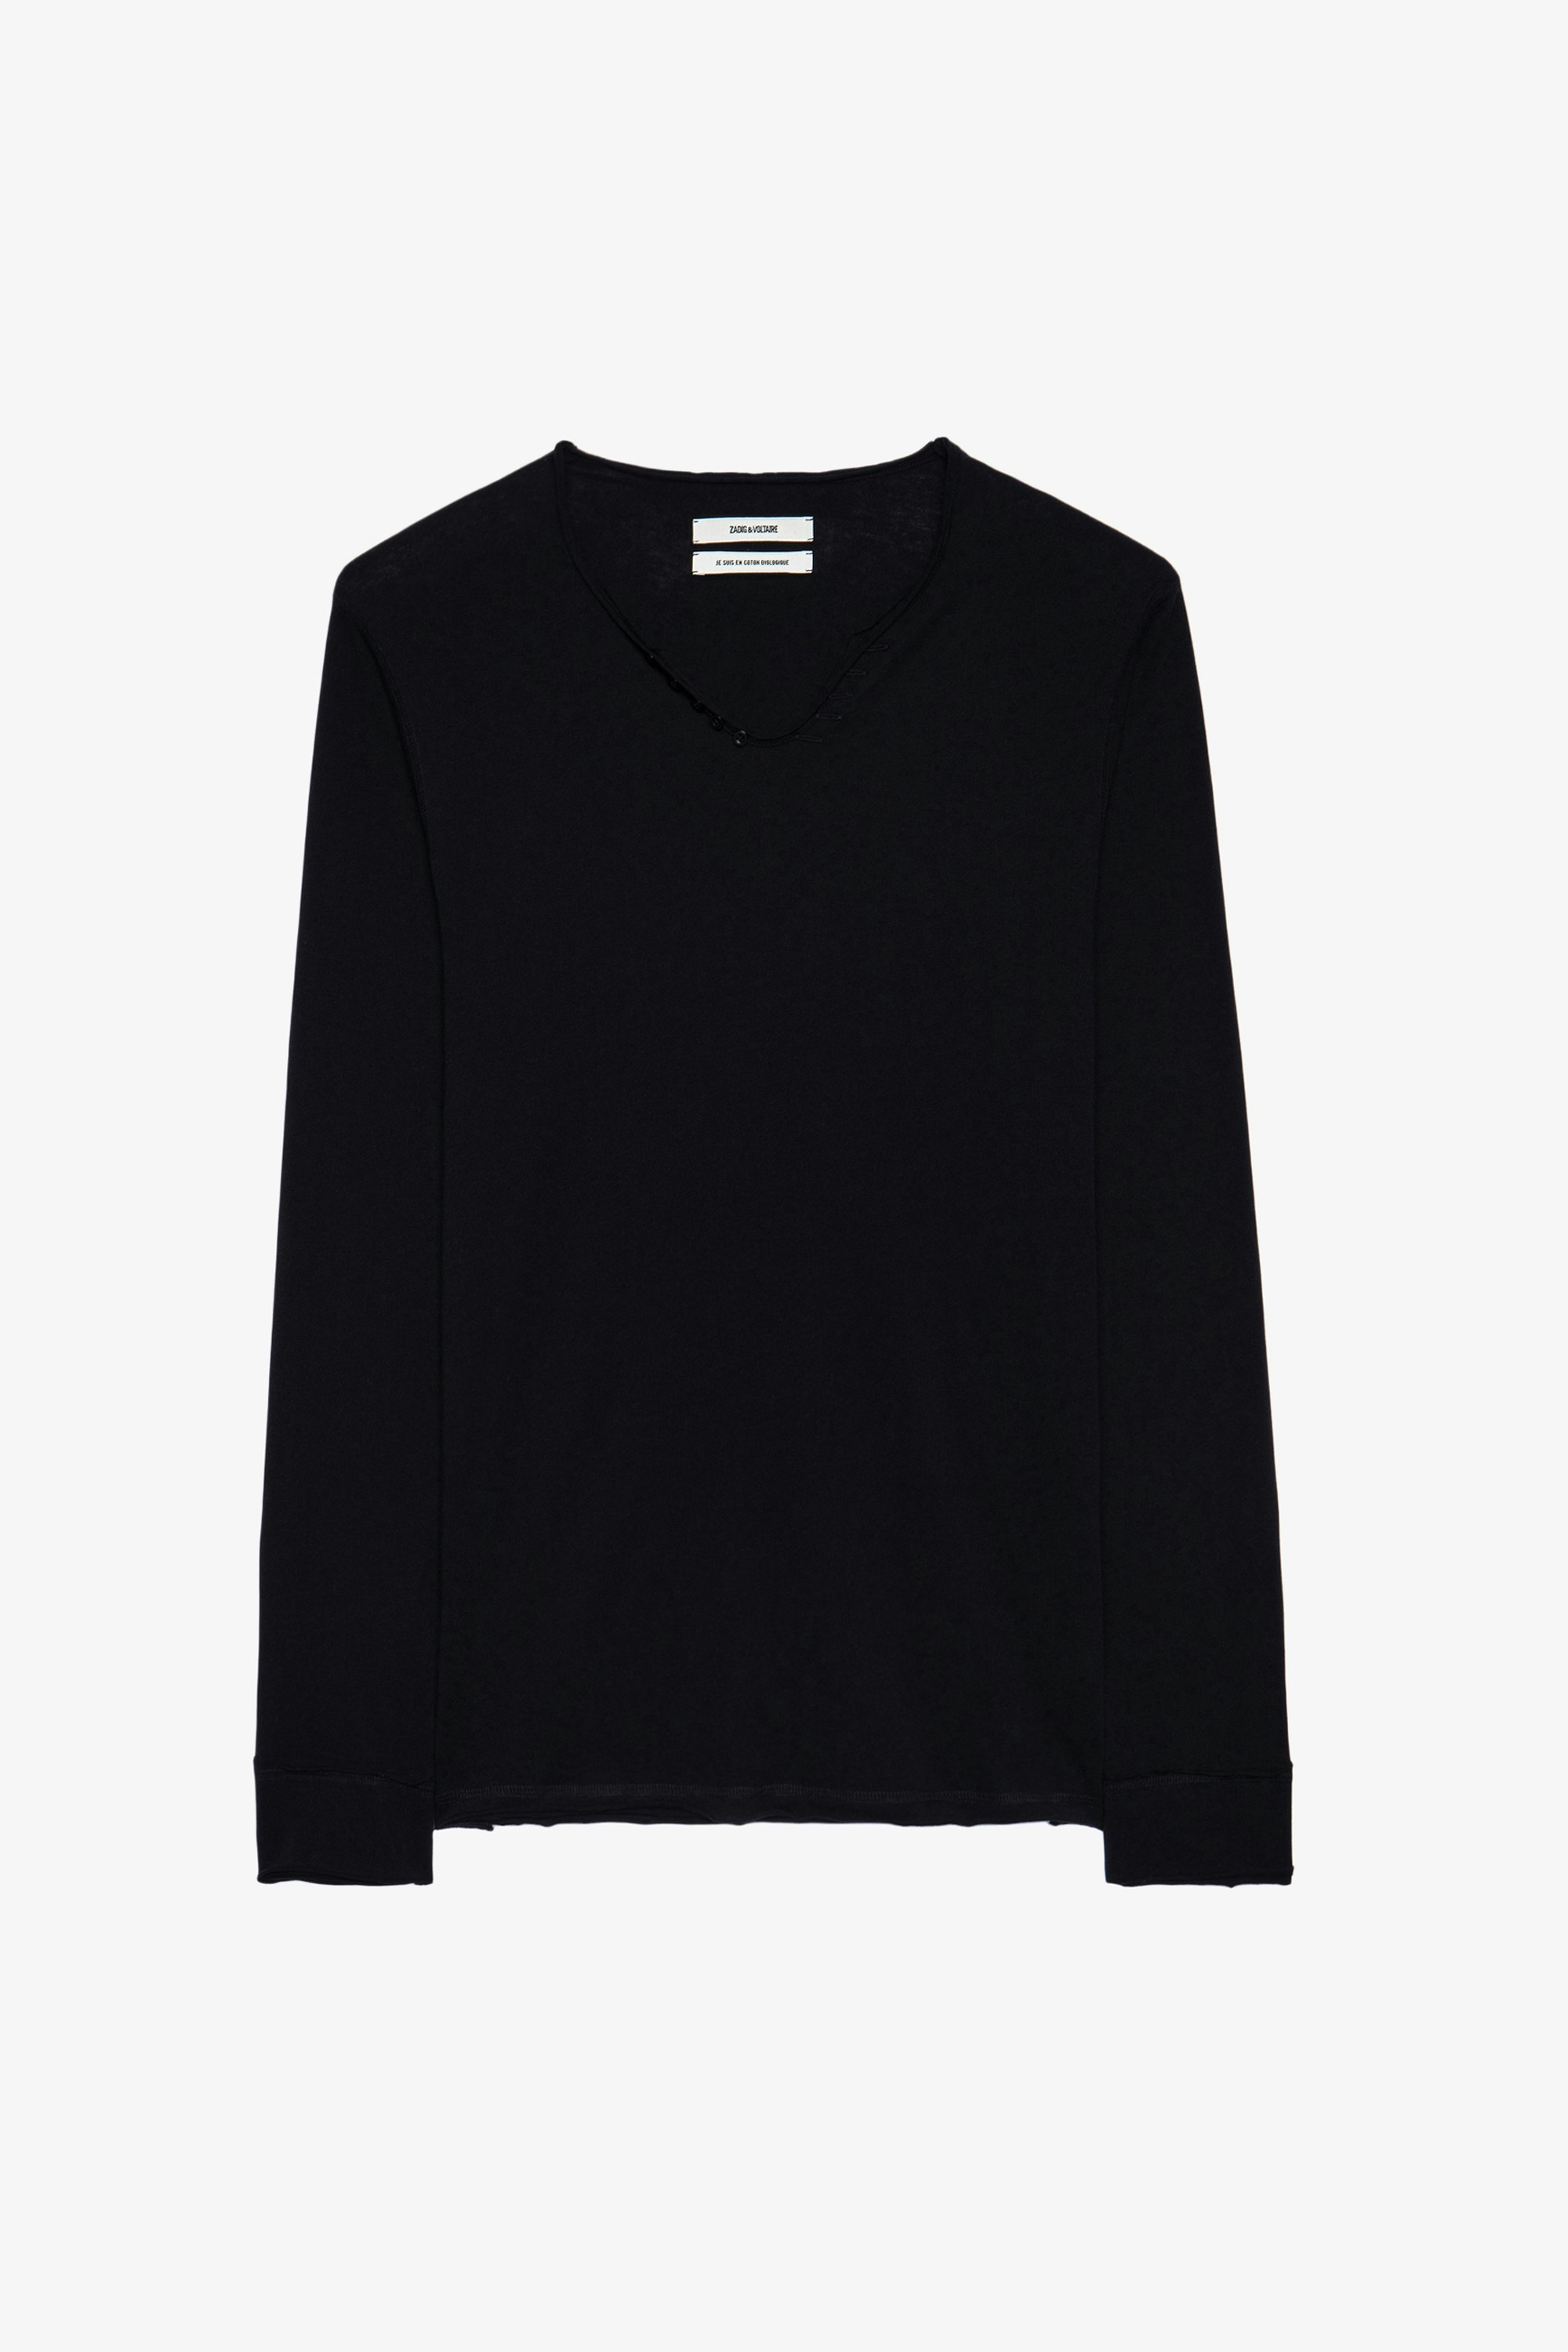 T-shirt Serafino Monastir - T-shirt nera in cotone con collo a serafino